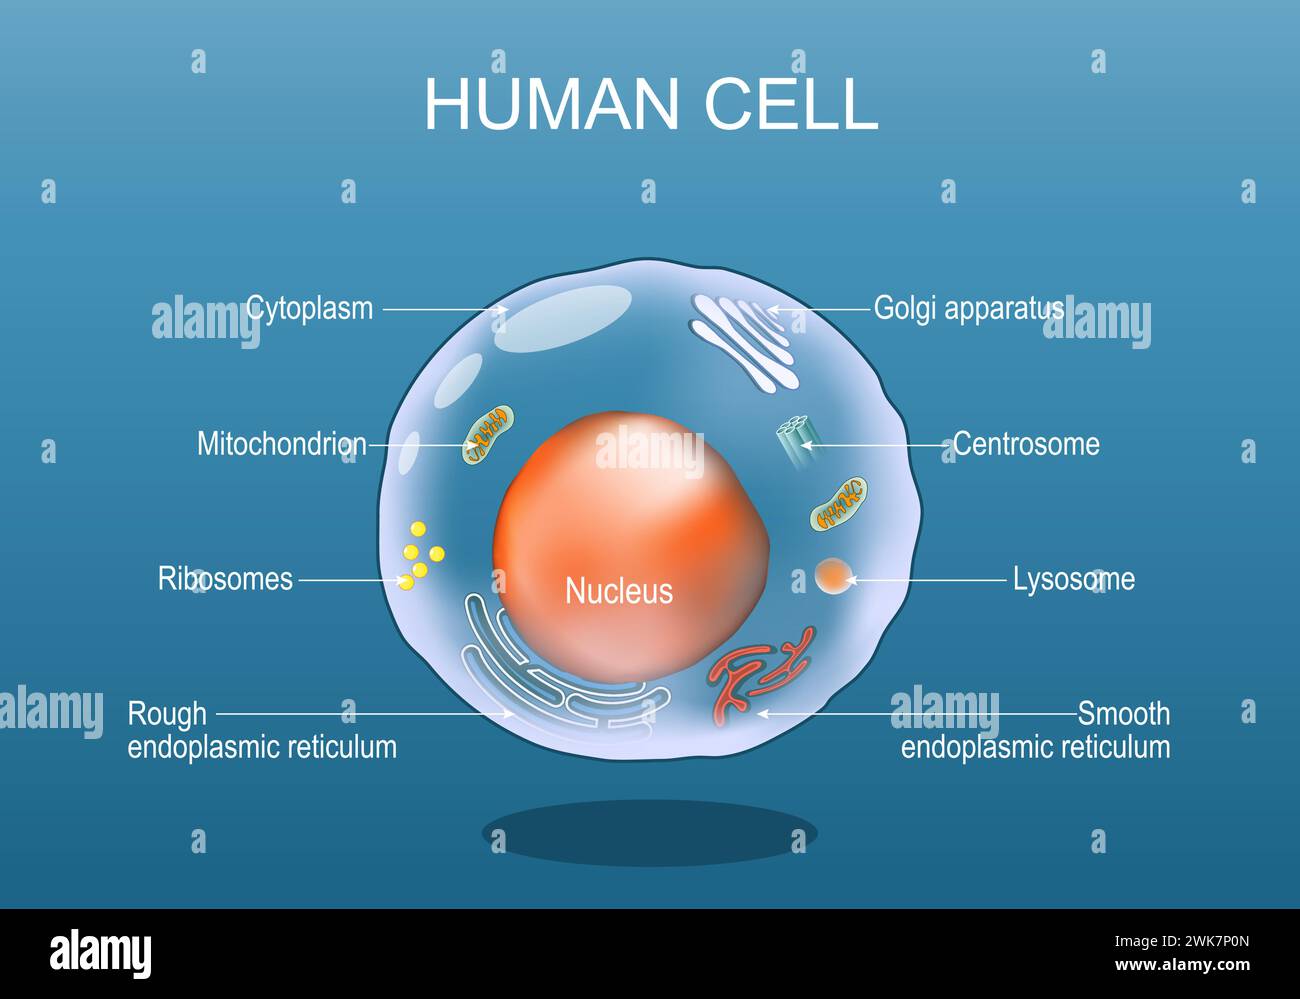 Menschliche Zellanatomie. Zur Struktur einer eukaryotischen Zelle. Alle Organellen: Nucleus, Ribosom, raues endoplasmatisches Retikulum, Golgi-Apparat, Mitochondrion, cy Stock Vektor